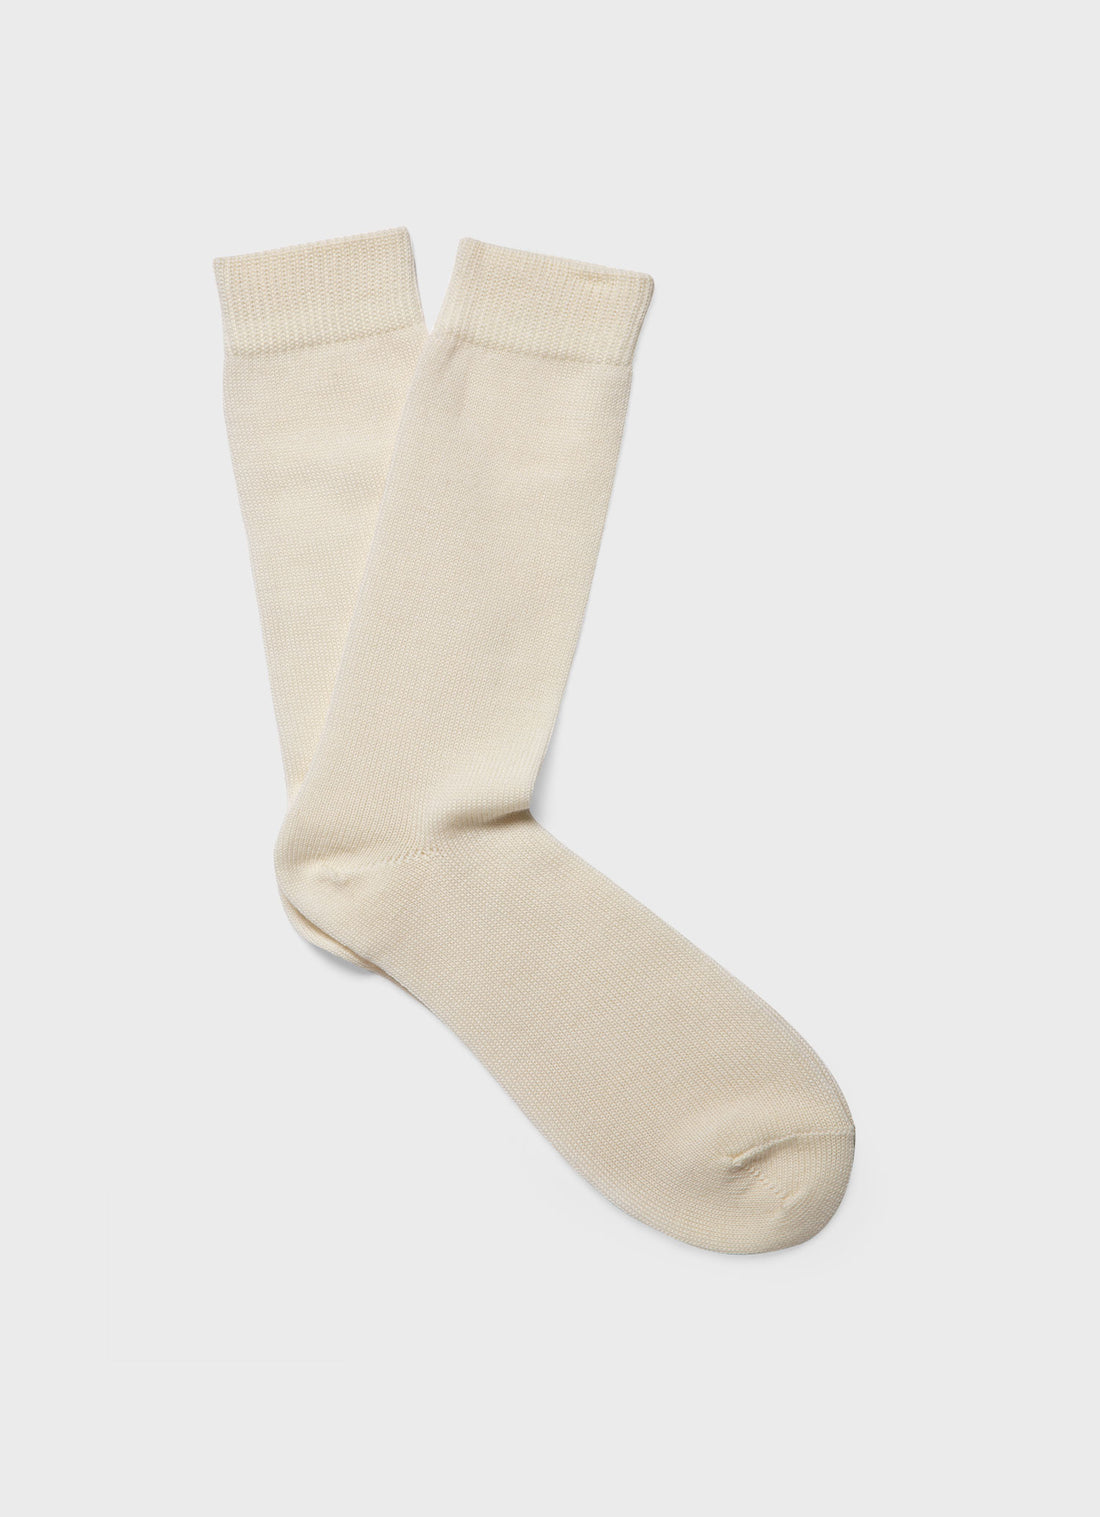 Men's Merino Wool Socks in Ecru Twist